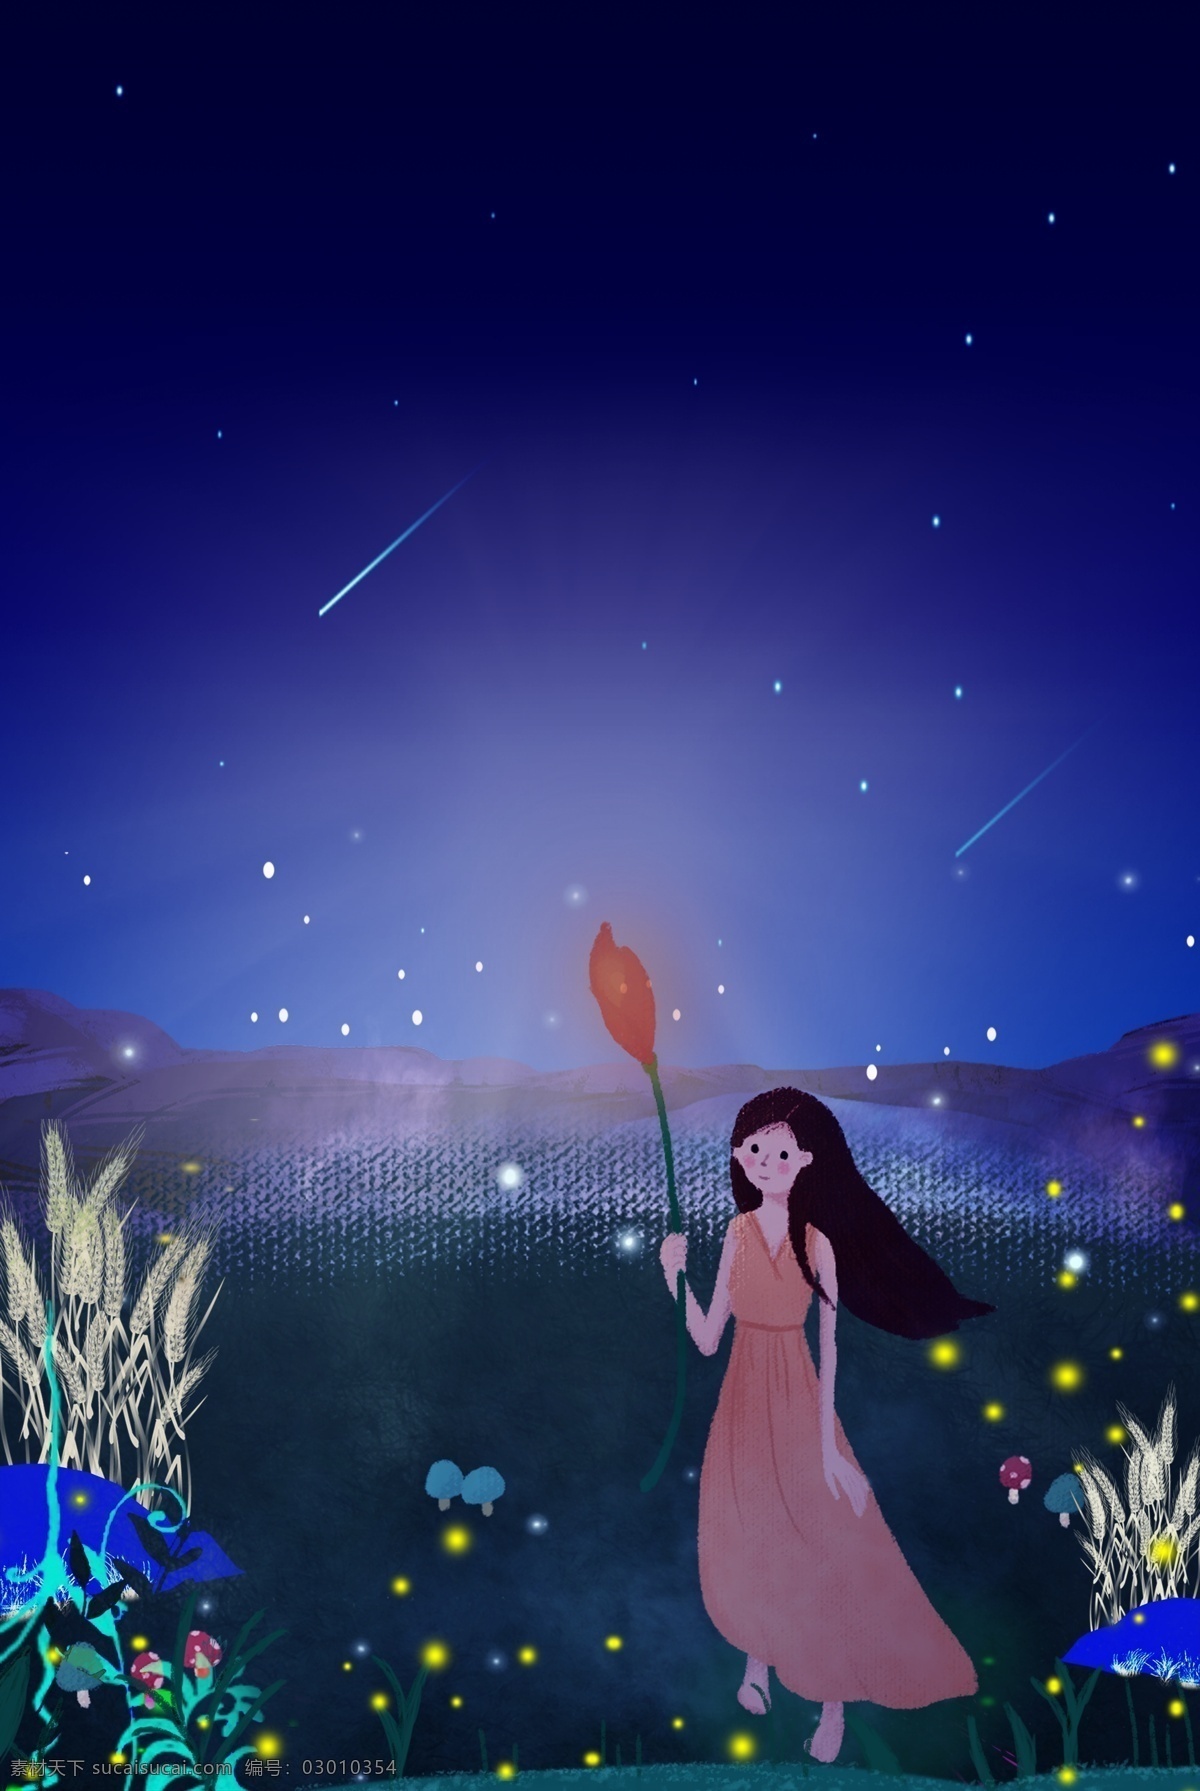 星空 自然风景 合成 背景 夜景 唯美 流星 围栏 女孩 卡通 创意